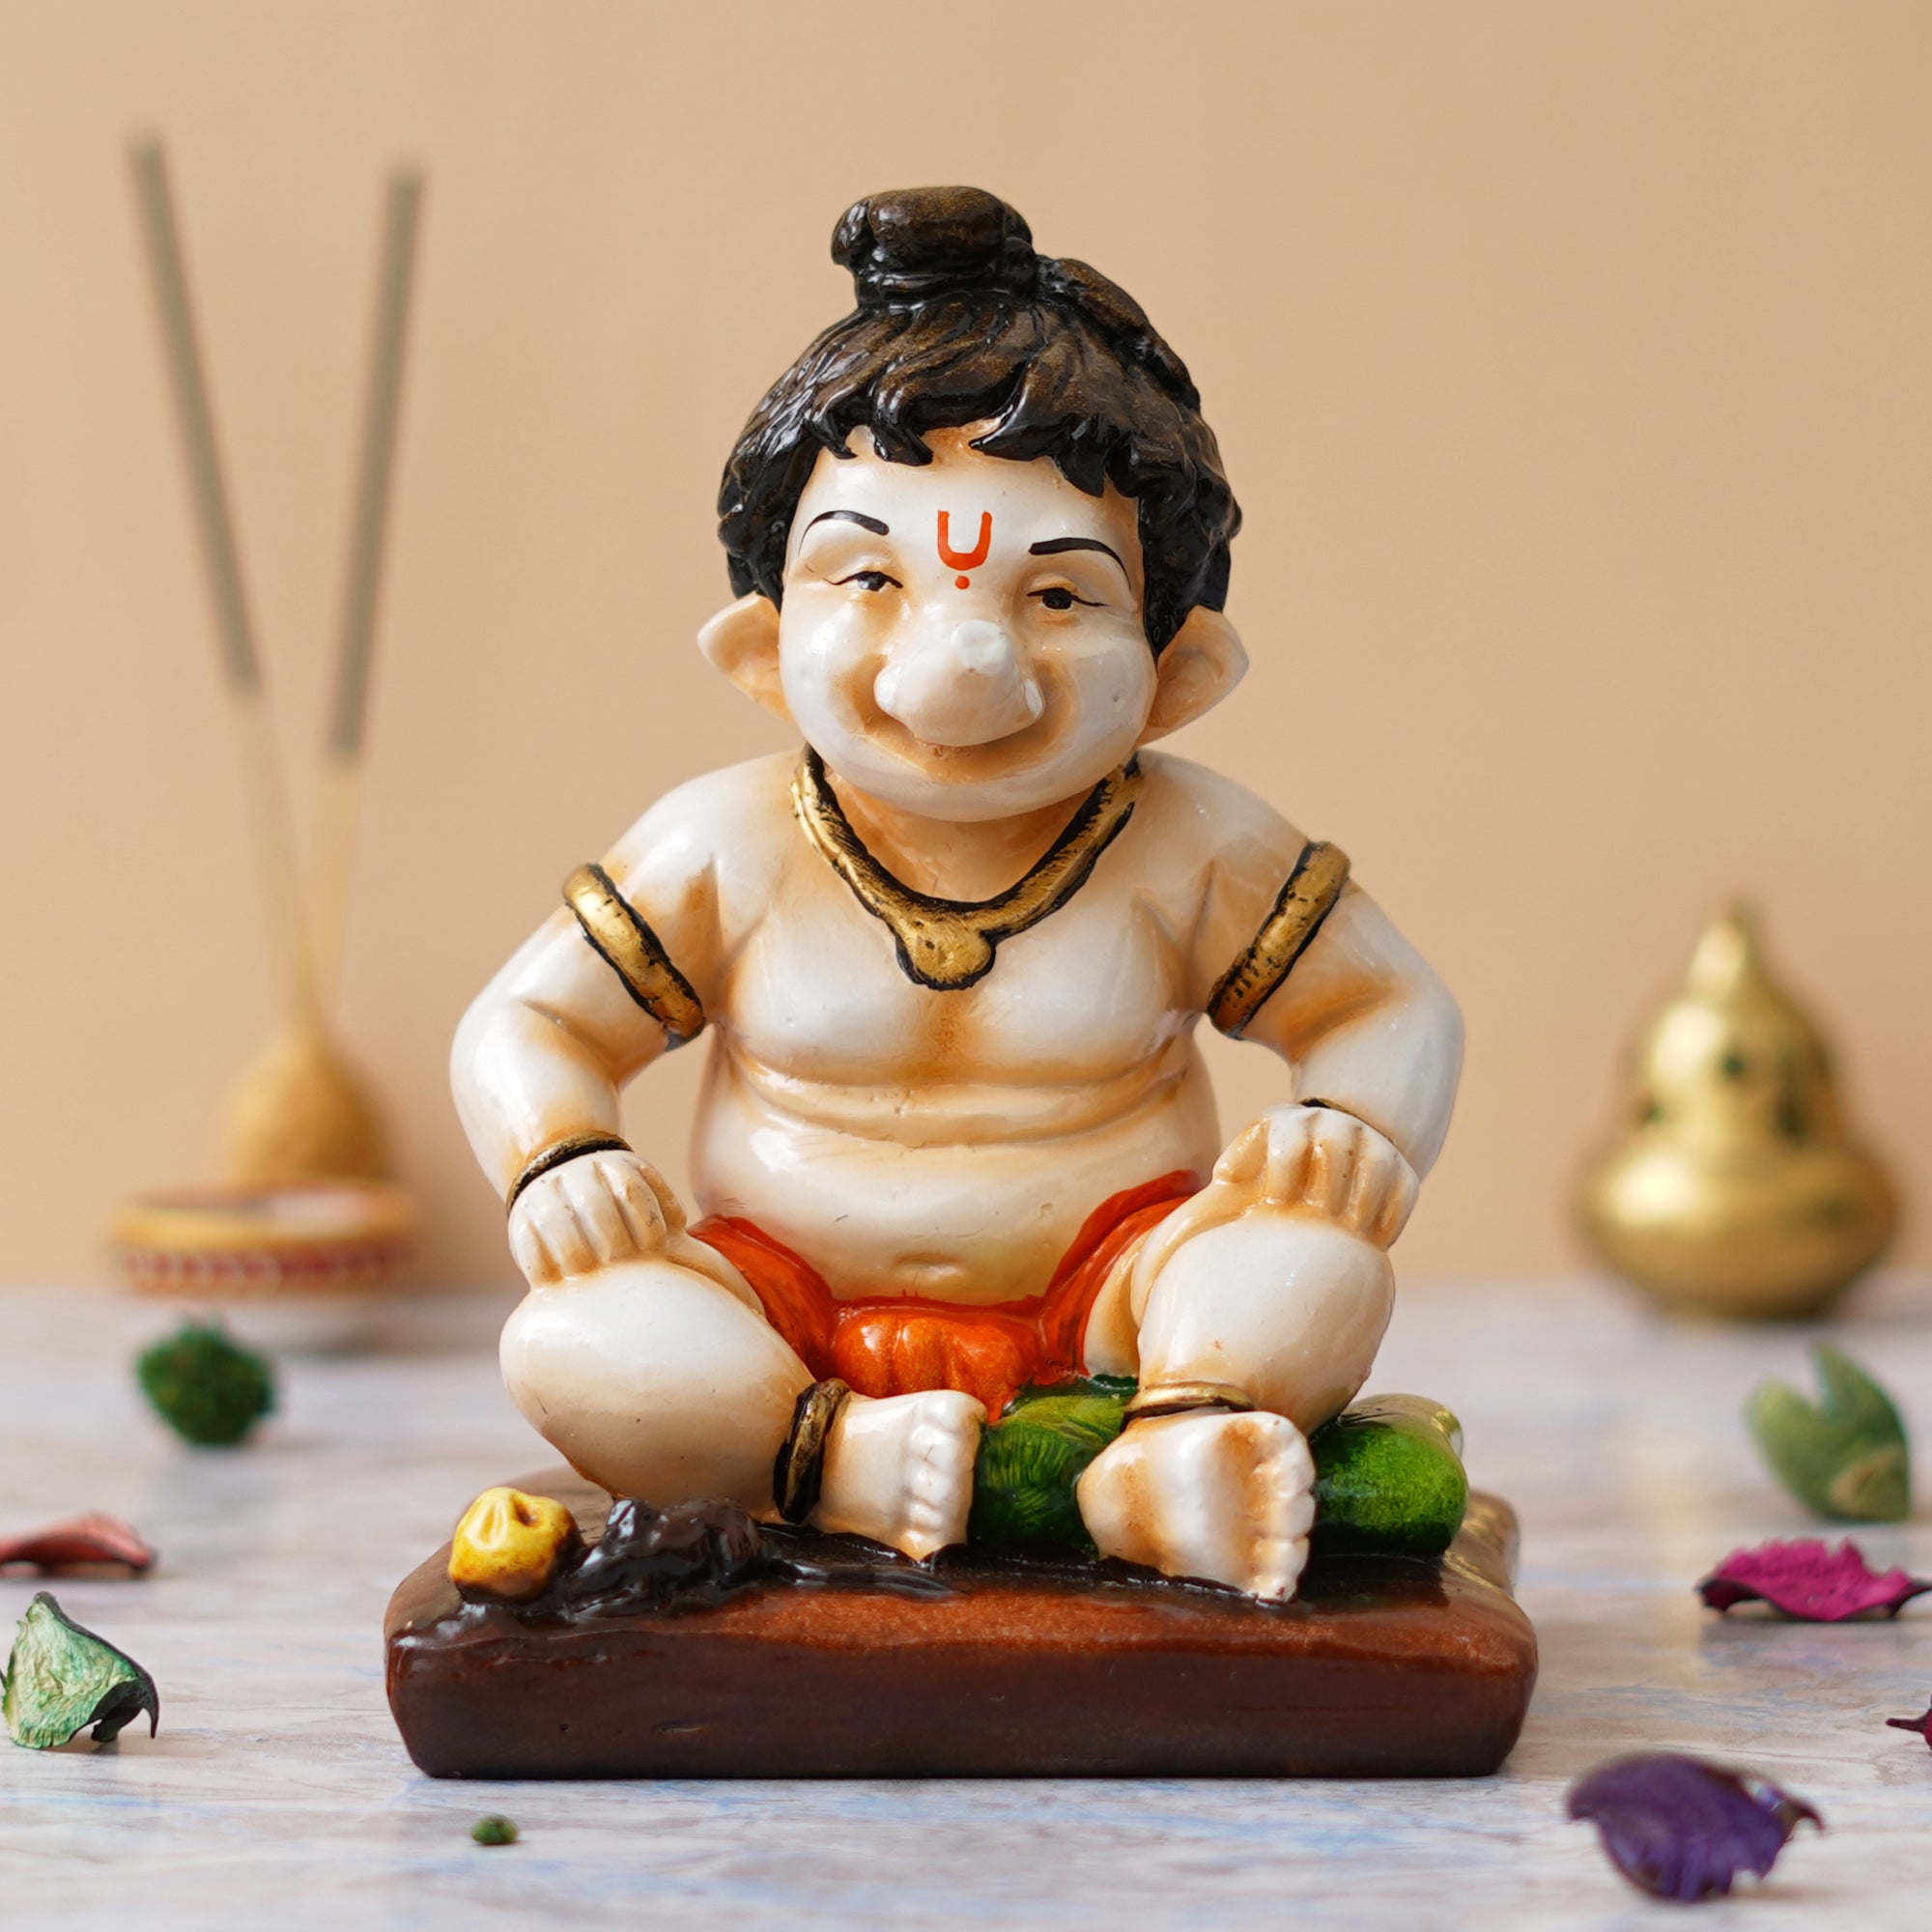 eCraftIndia Multicolor Polyresin Handcrafted Sitting Lord Ganesha Idol